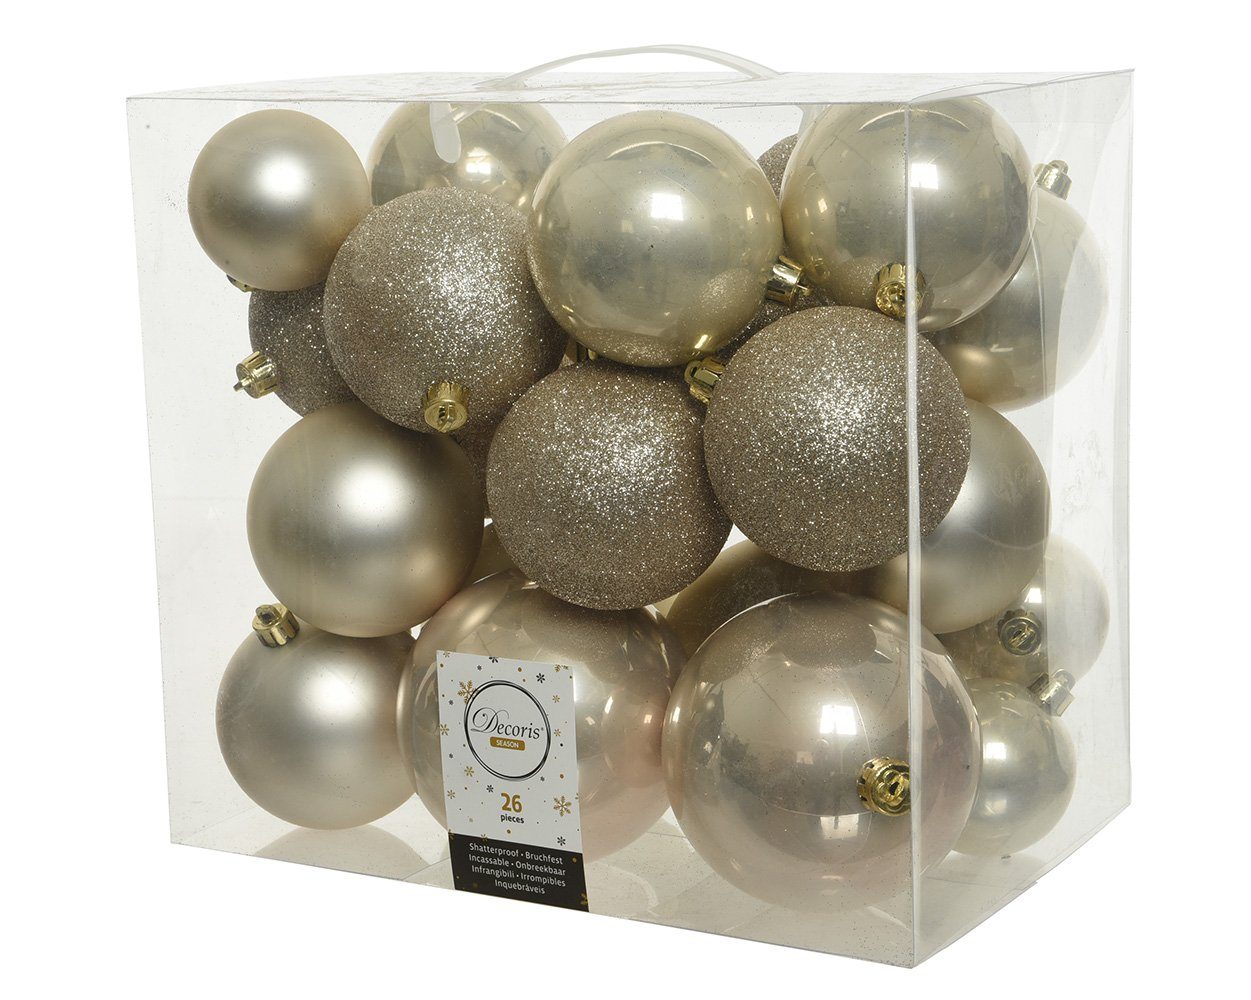 Decoris season decorations Weihnachtsbaumkugel, Weihnachtskugeln Kunststoff Mix 6-10cm perle, 26er Set | Weihnachtskugeln